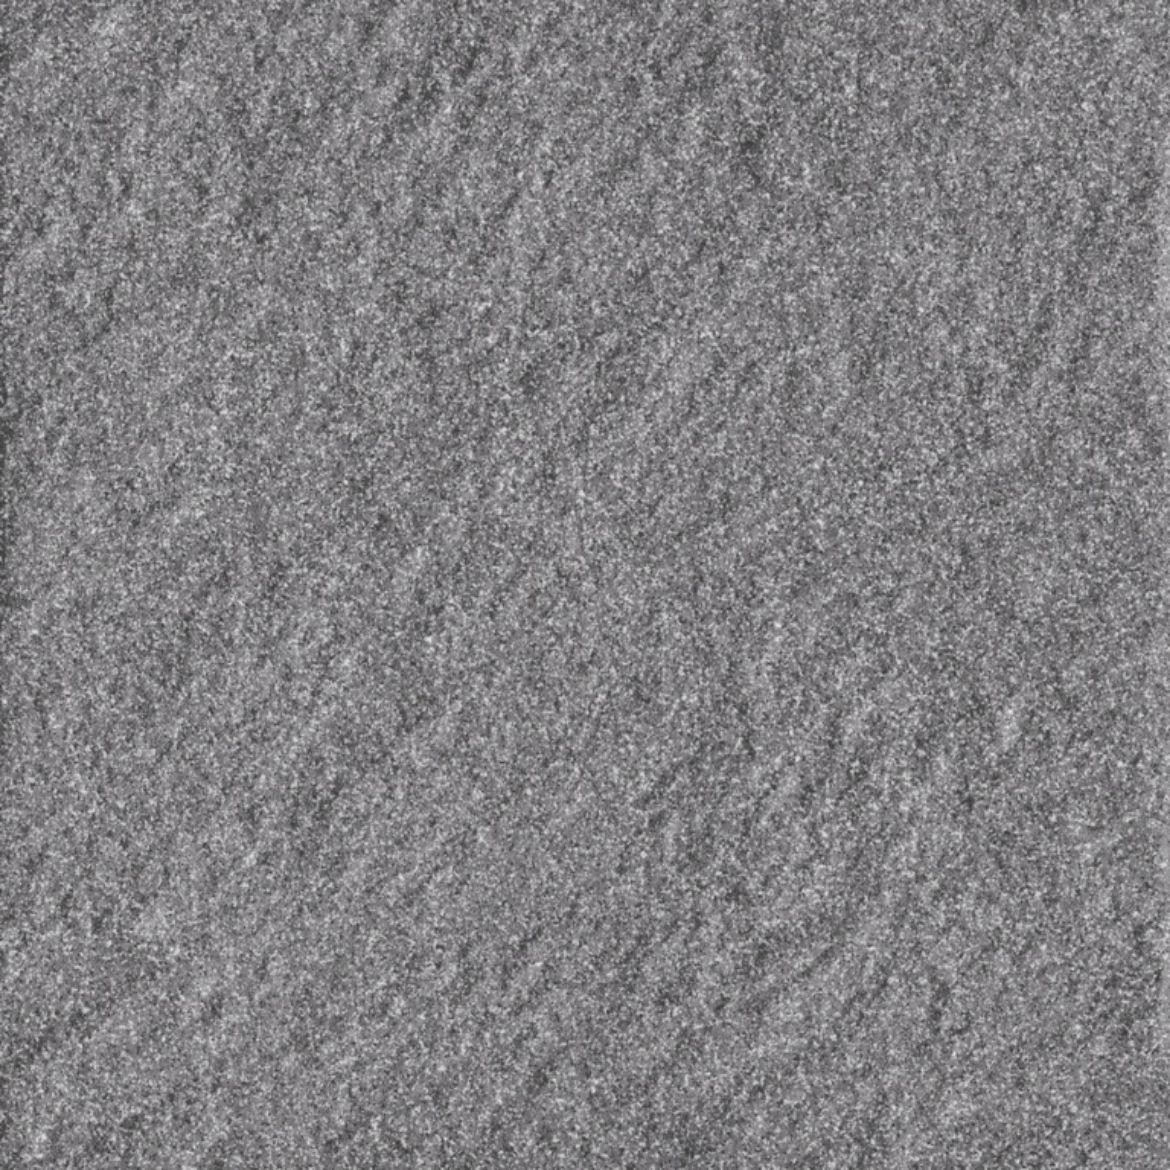 Billede af Taurus Granit Antracit 65 SR7 198x198 mm